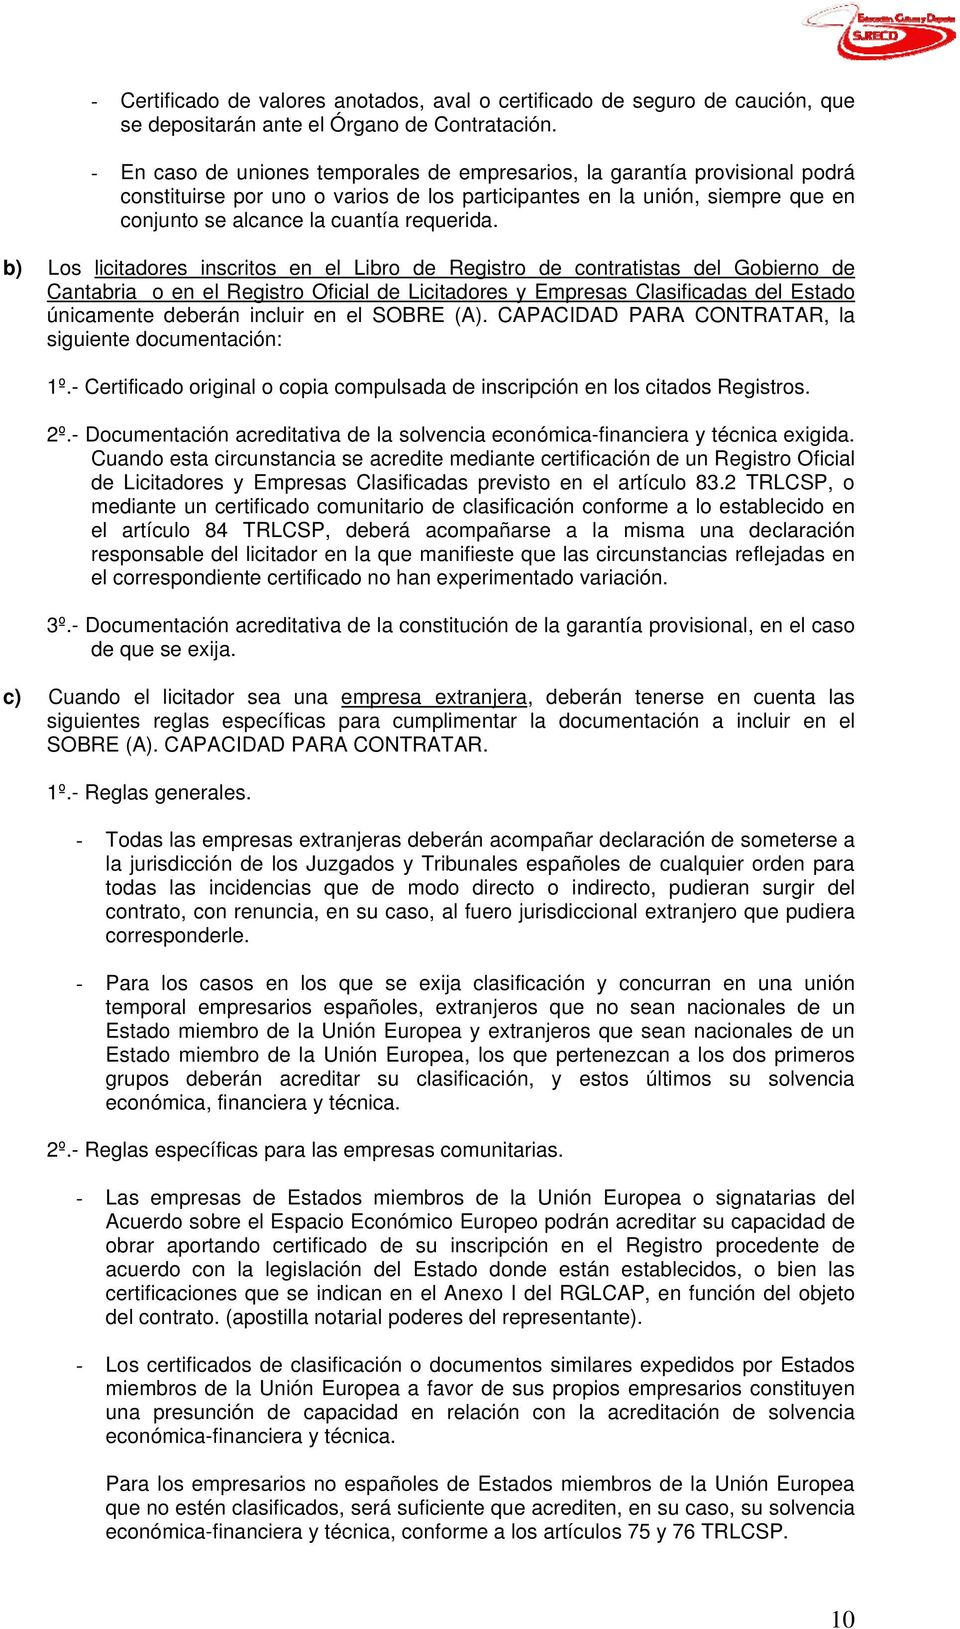 b) Los licitadores inscritos en el Libro de Registro de contratistas del Gobierno de Cantabria o en el Registro Oficial de Licitadores y Empresas Clasificadas del Estado únicamente deberán incluir en